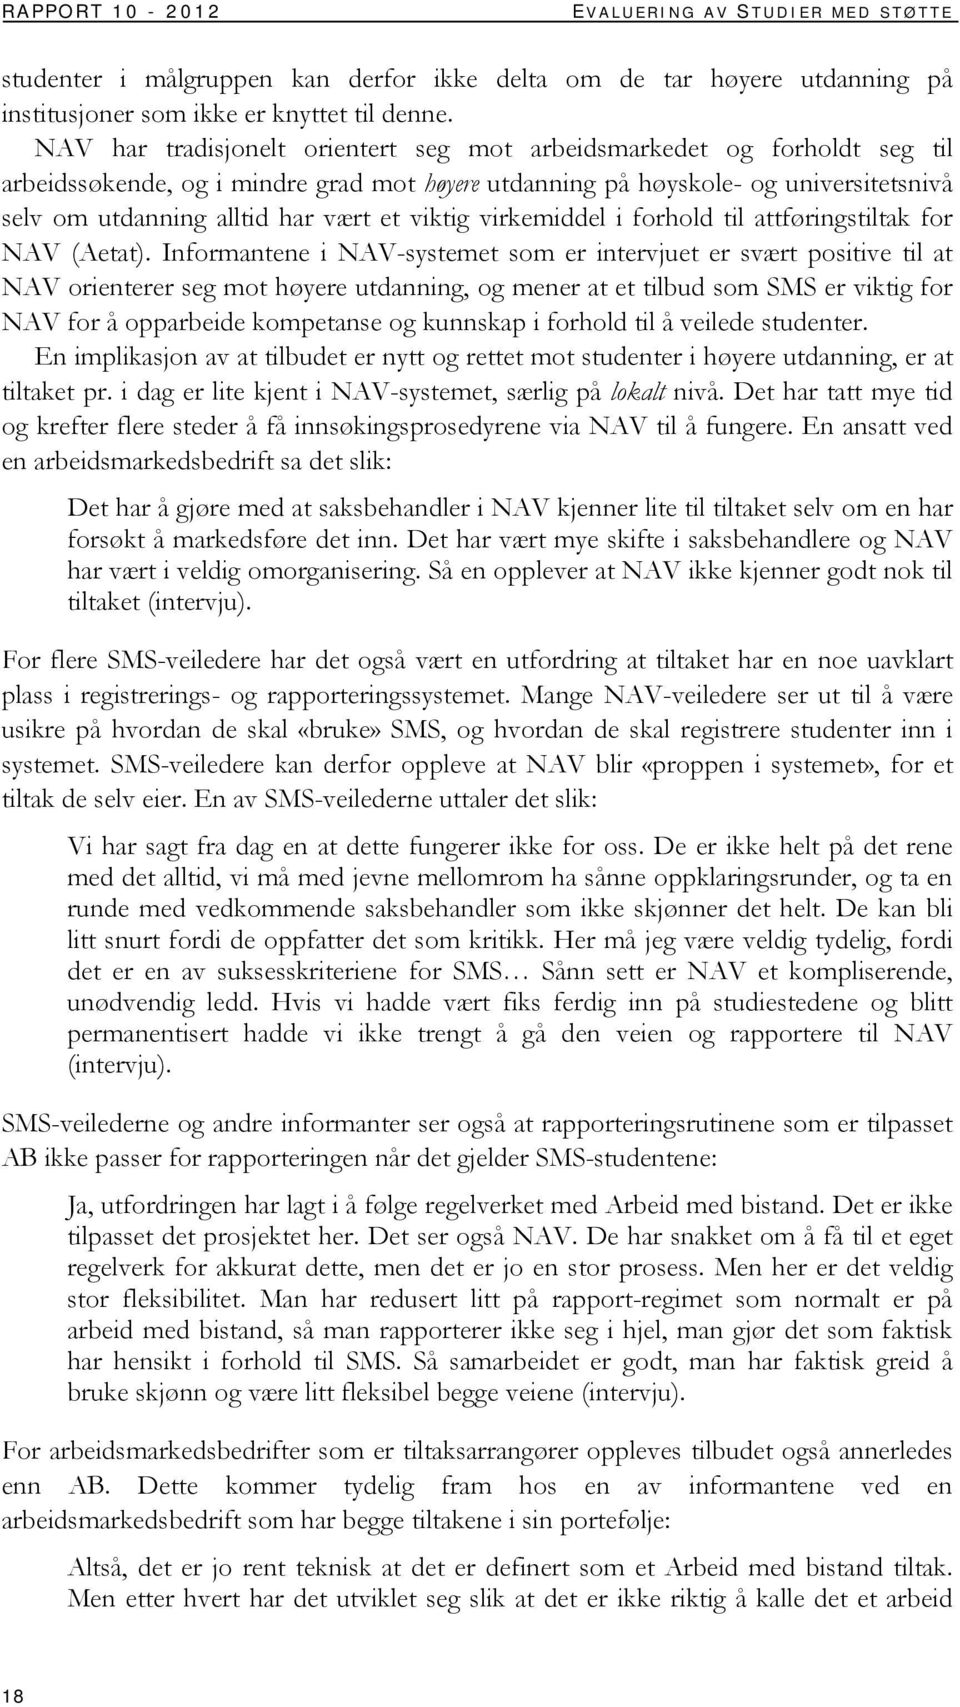 viktig virkemiddel i forhold til attføringstiltak for NAV (Aetat).